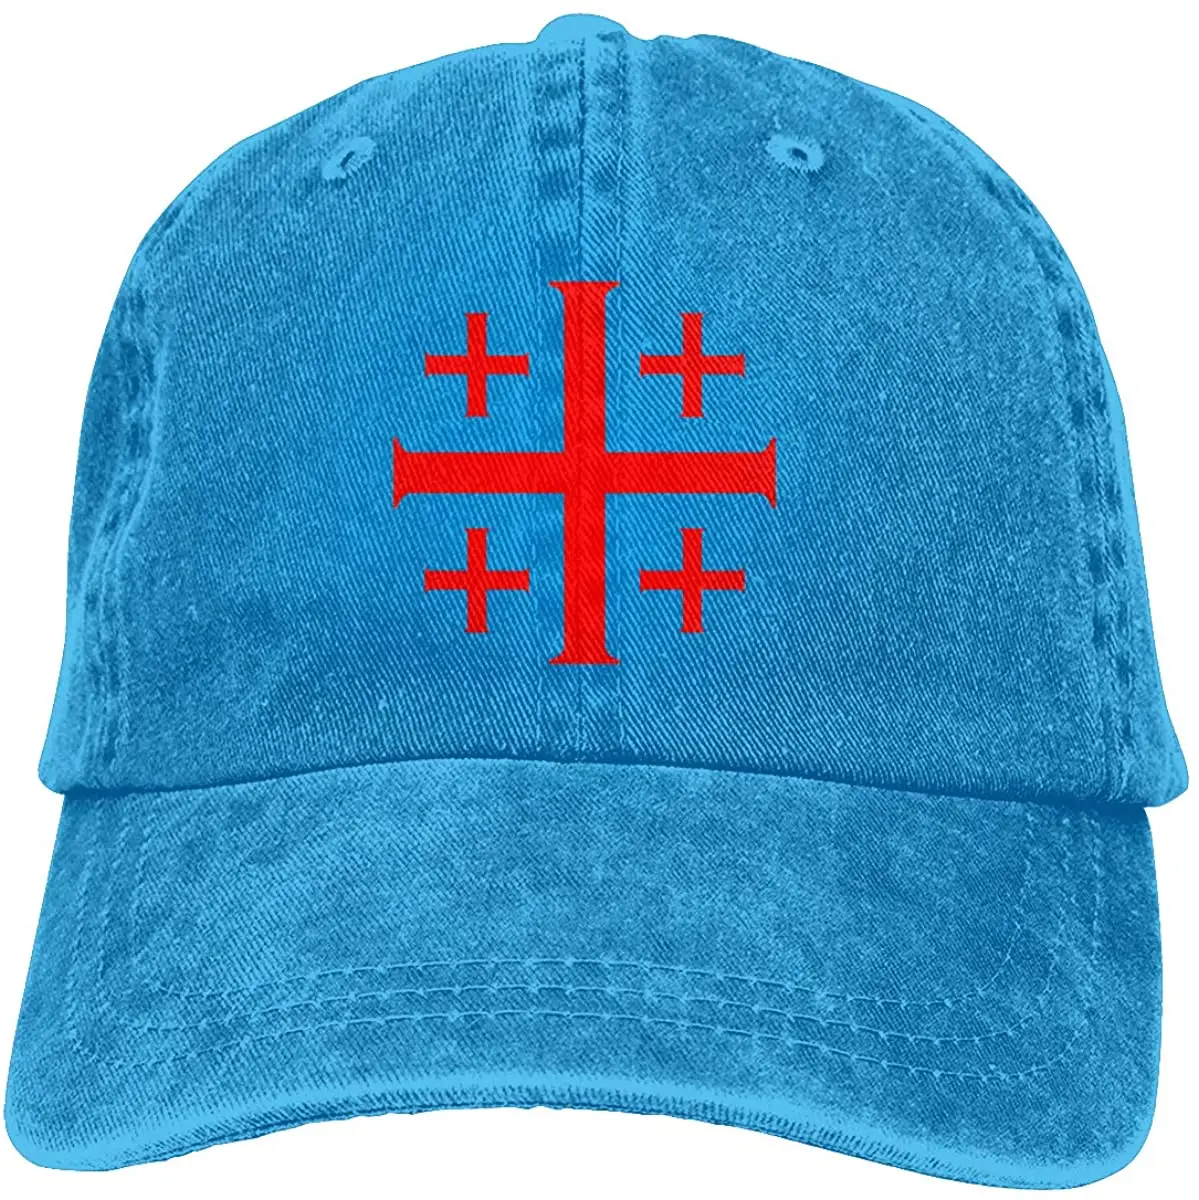 

Wholesale Denim Cap Red Jerusalem Crusaders Cross Baseball Dad Cap Adjustable Classic Sports For Men Women Hat